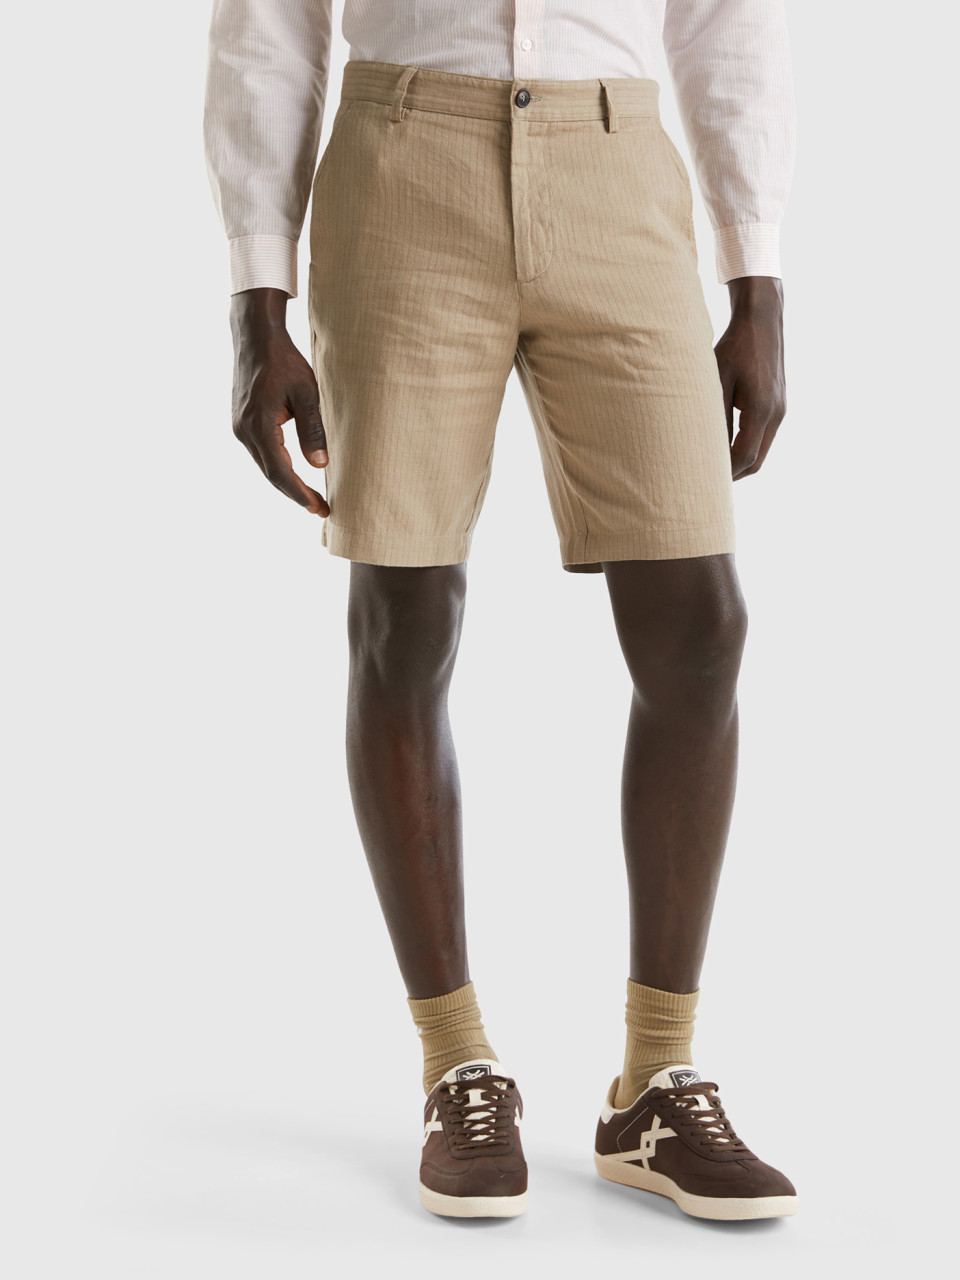 Benetton, Striped Shorts In Linen Blend, Dove Gray, Men